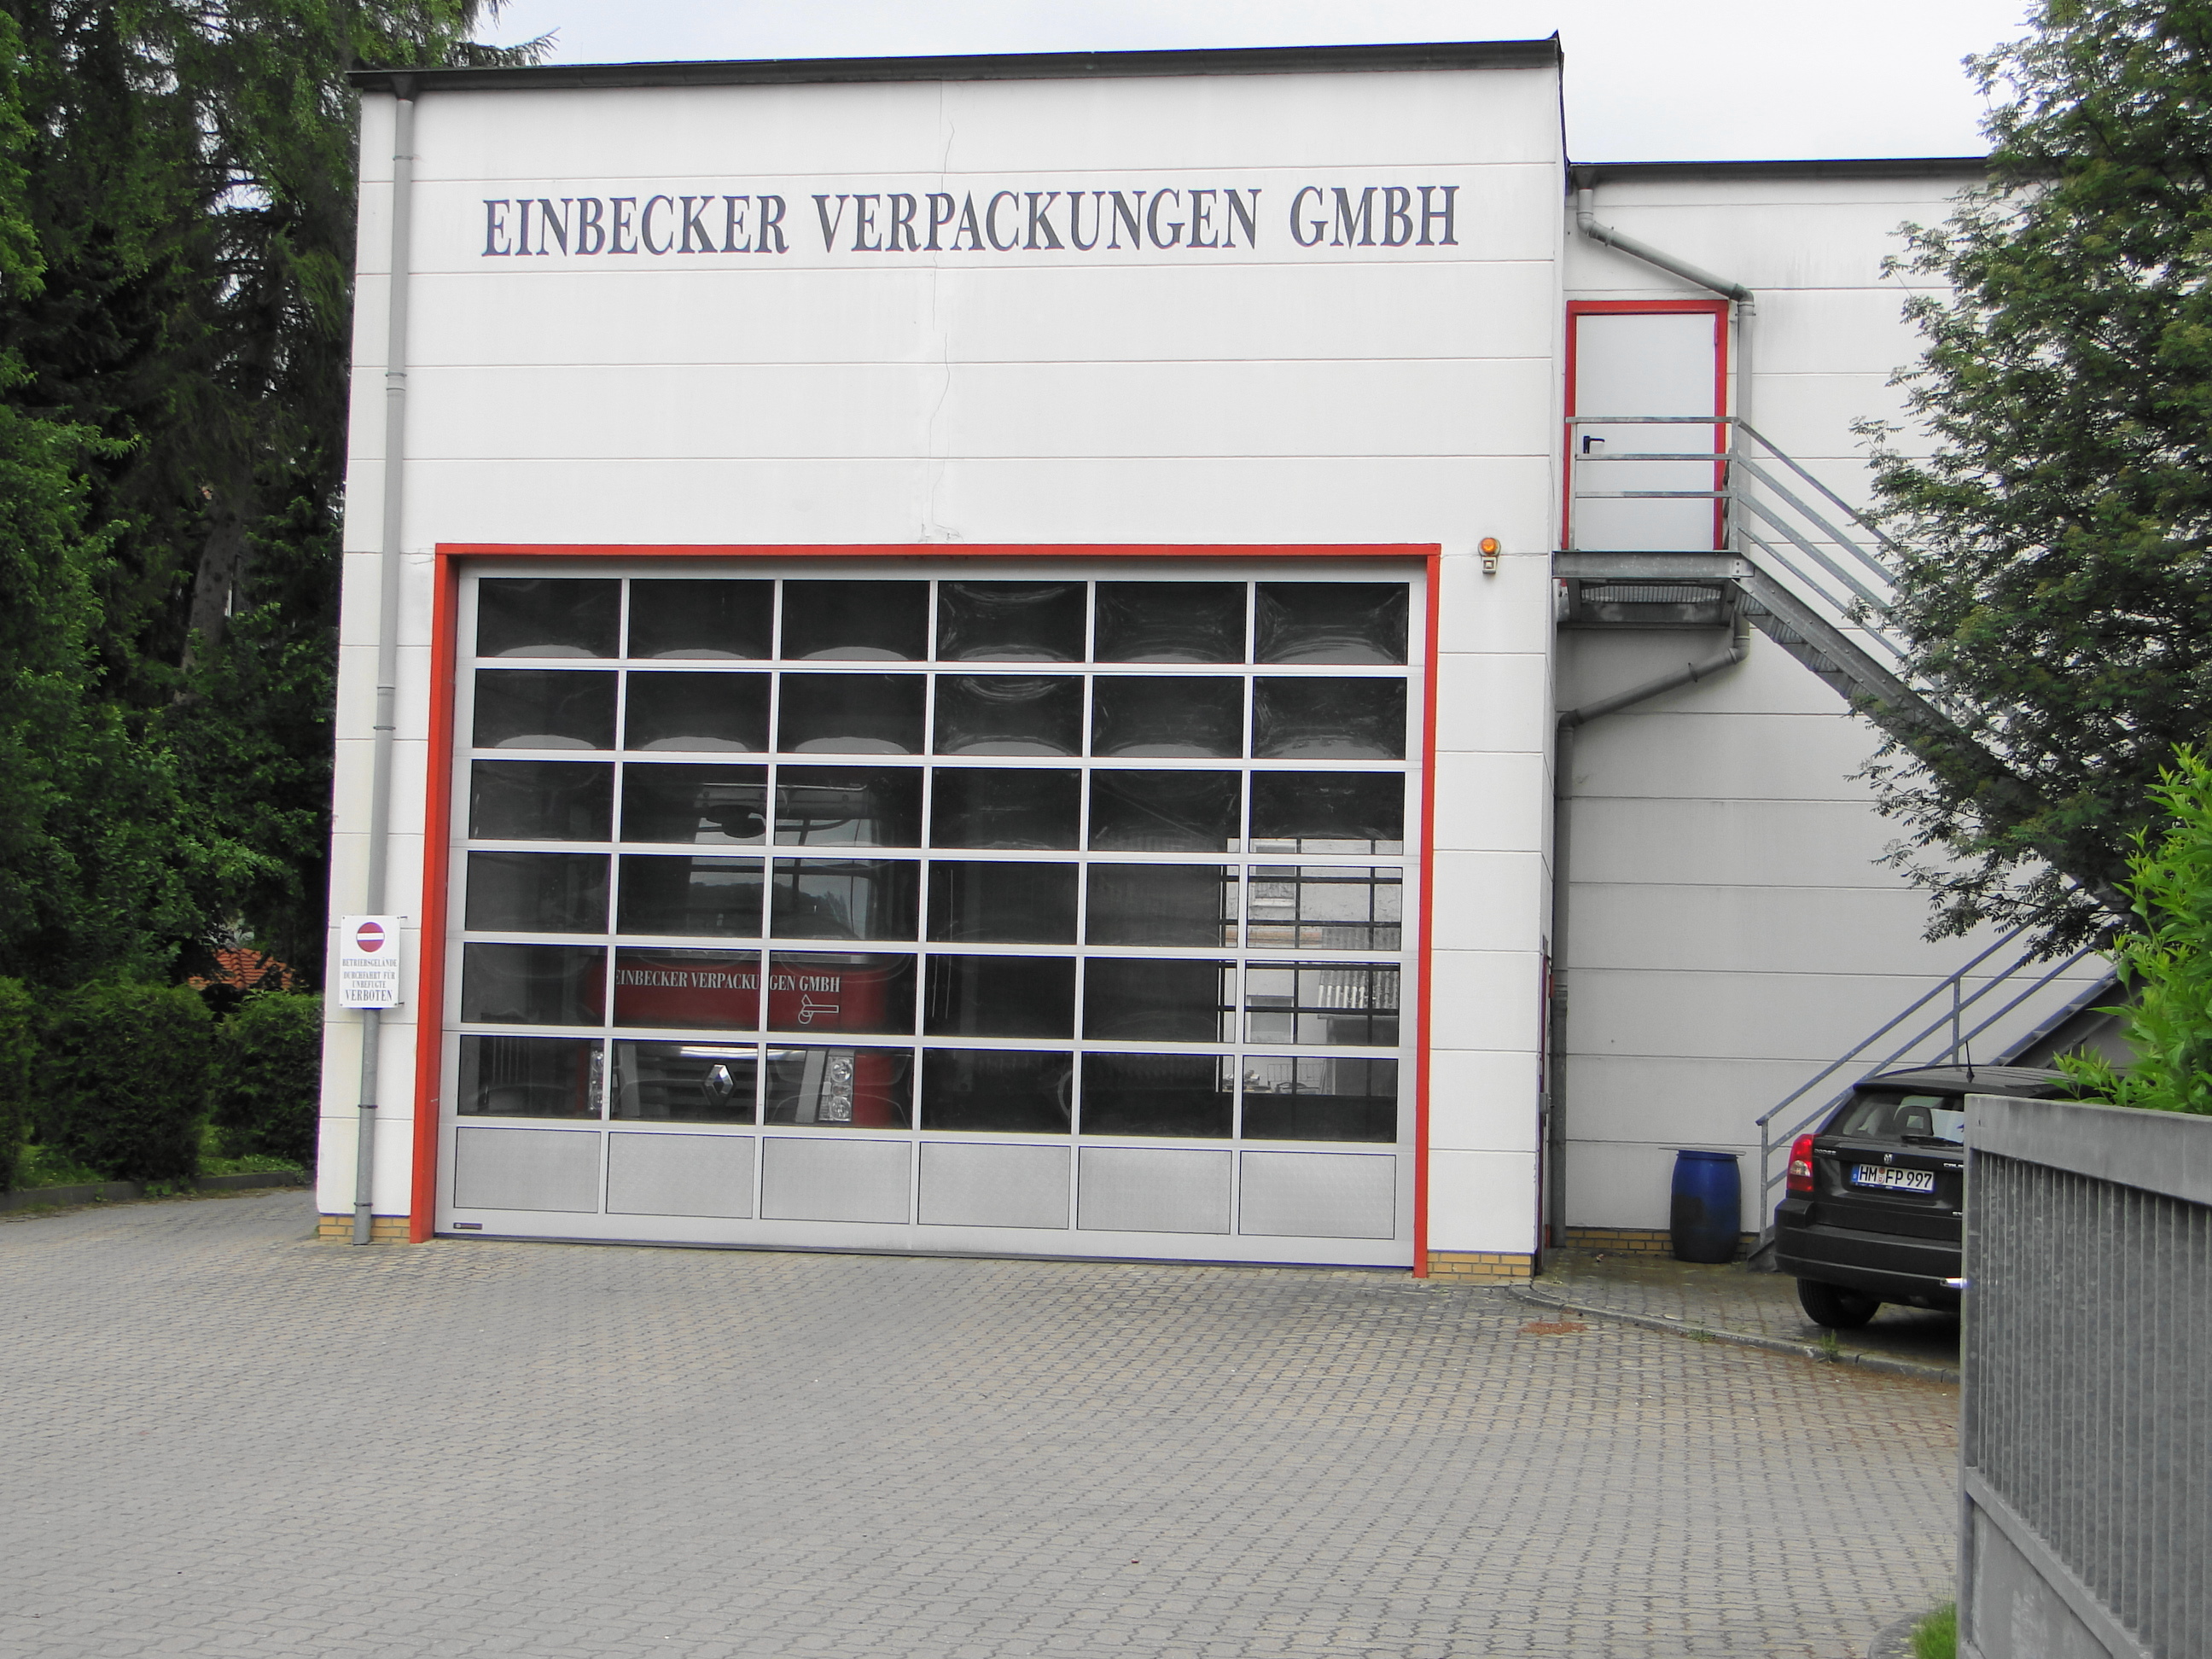 Einbecker Verpackungen GmbH in der Schusterstr. 8